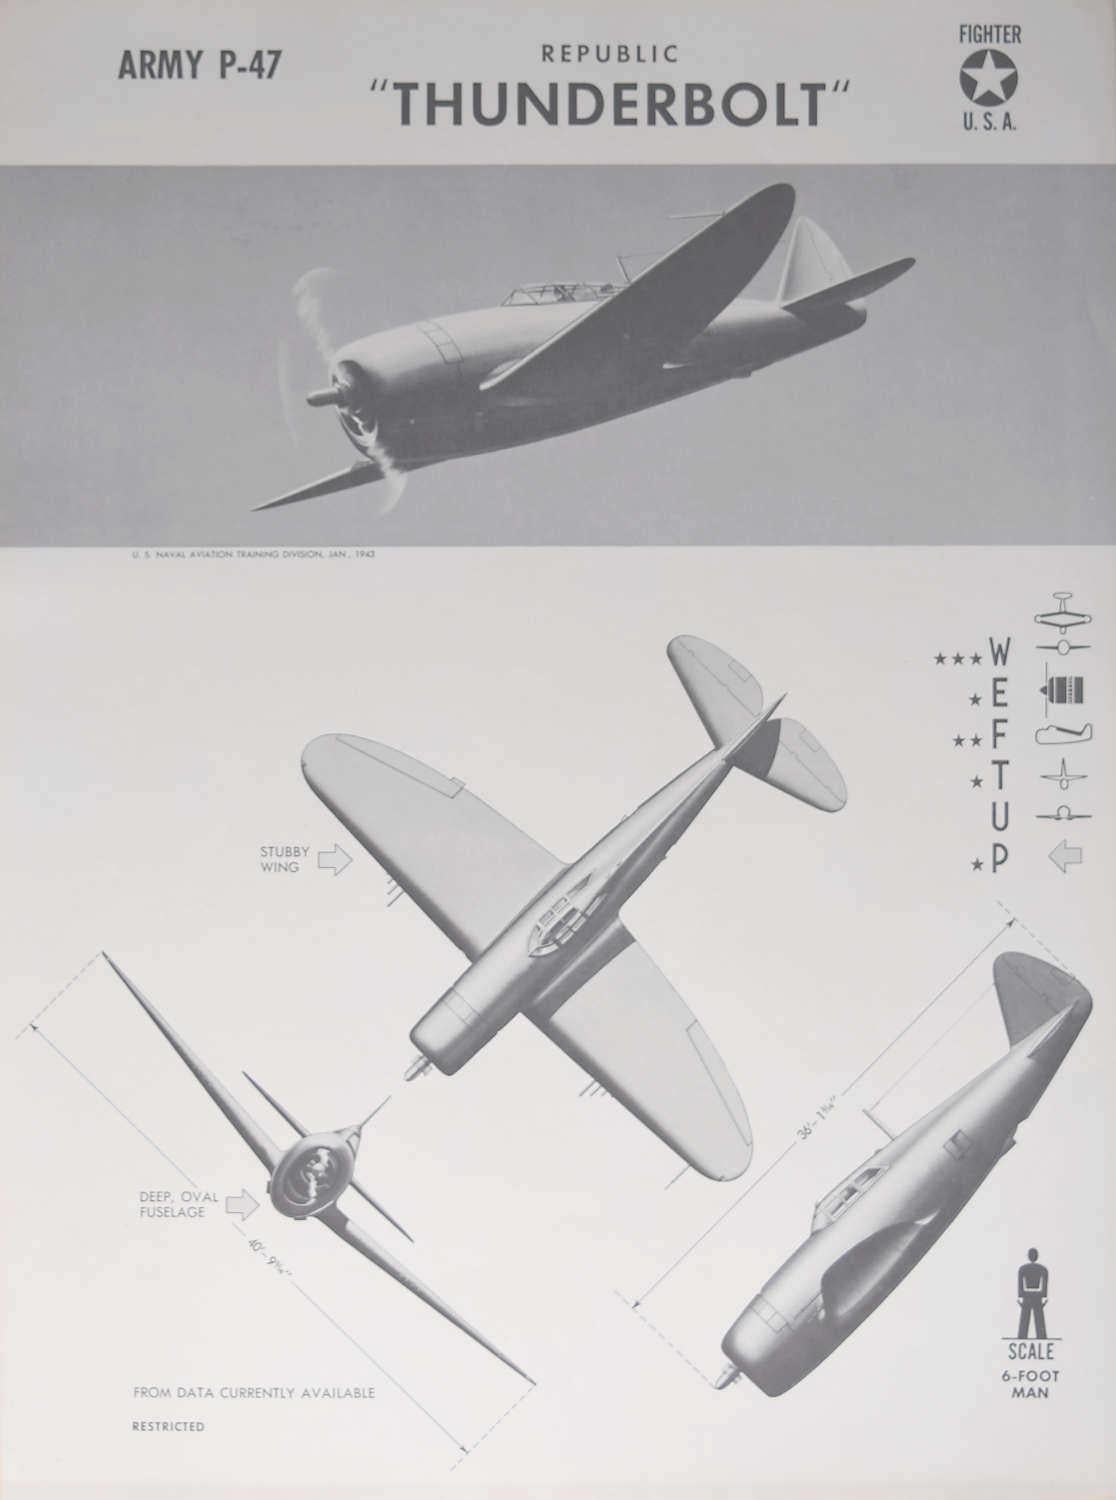 Affiche d'identification des avions de chasseurs américains «underbolt » de la République américaine datant de 1942, Seconde Guerre mondiale - Print de Unknown